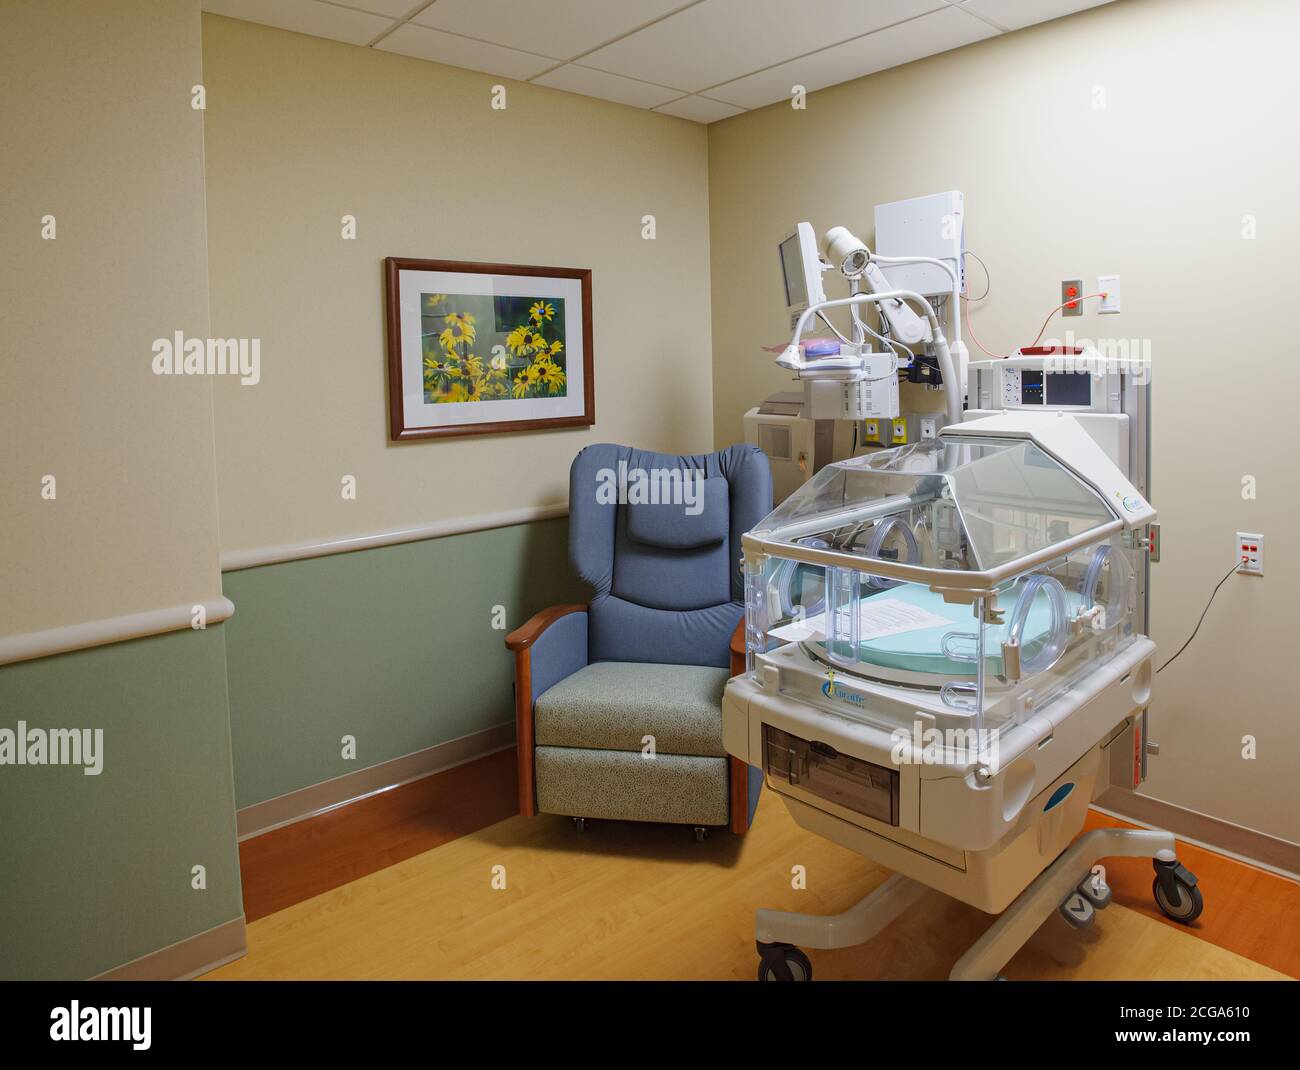 Salle de soins intensifs néonataux dans le cadre de l'aile de maternité de conception moderne de l'hôpital Henry Ford West Bloomfield avec art mural nature, Michigan, États-Unis Banque D'Images